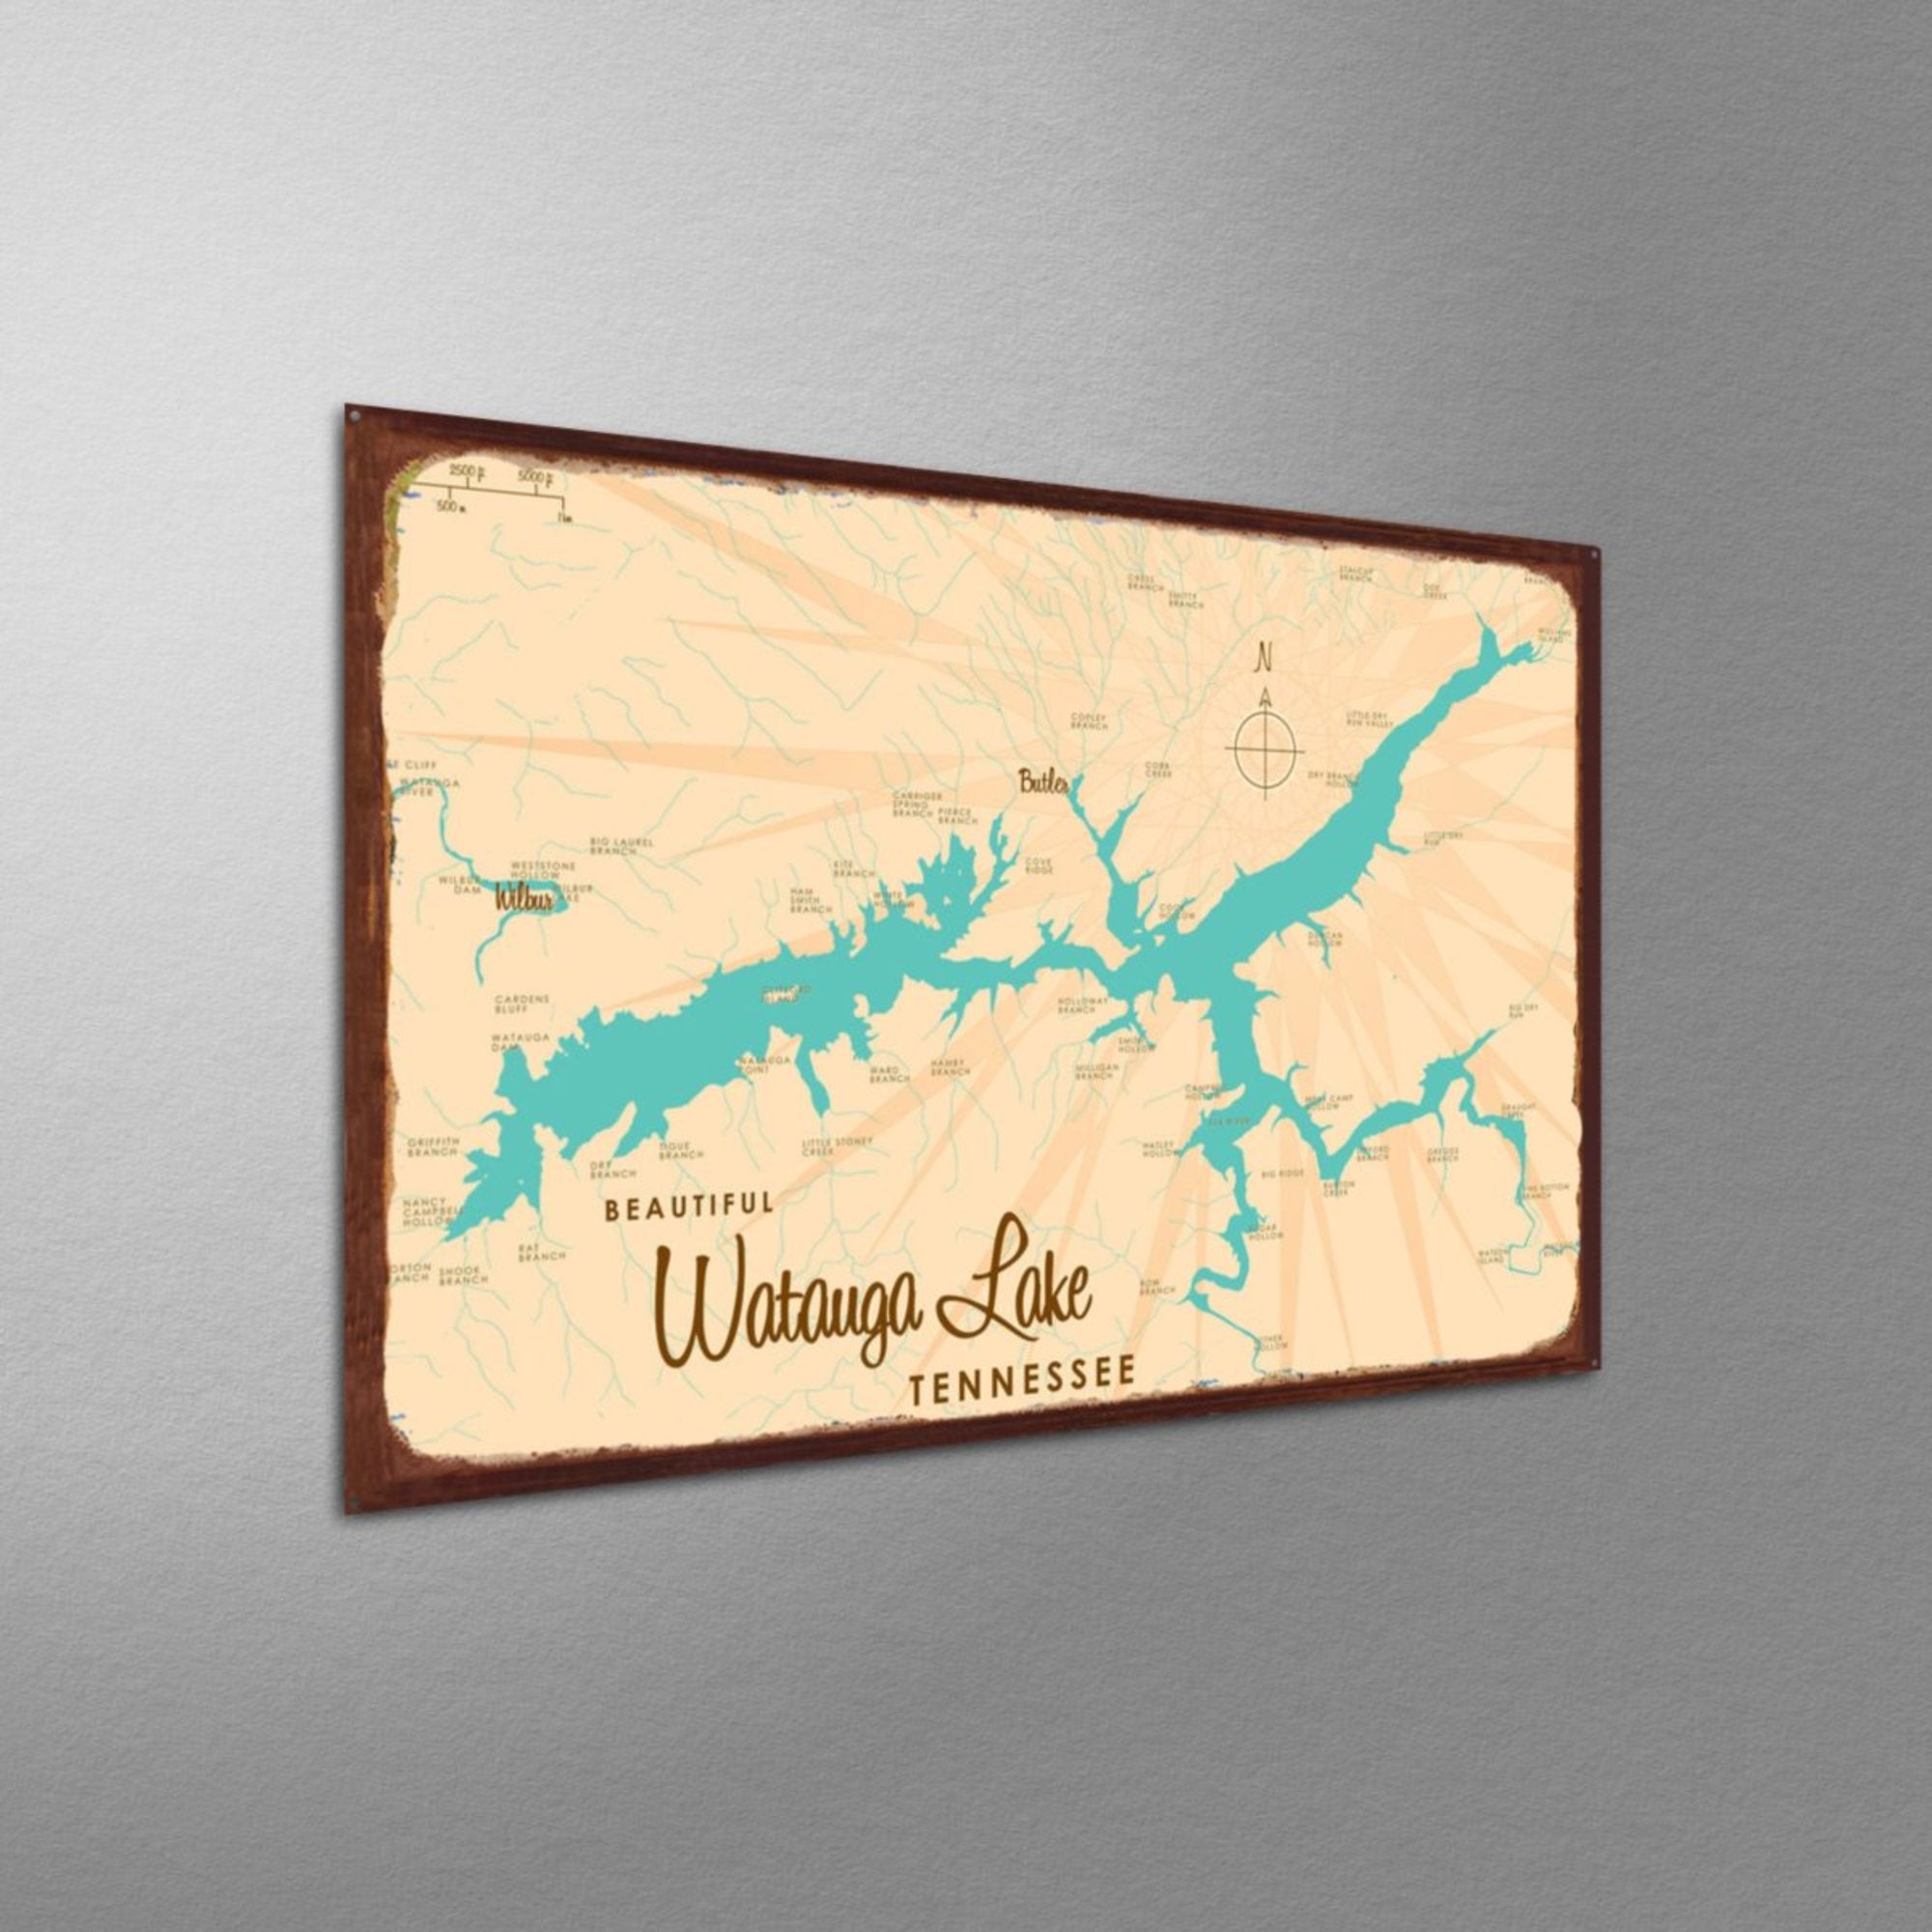 Watauga Lake Tennessee, Rustic Metal Sign Map Art